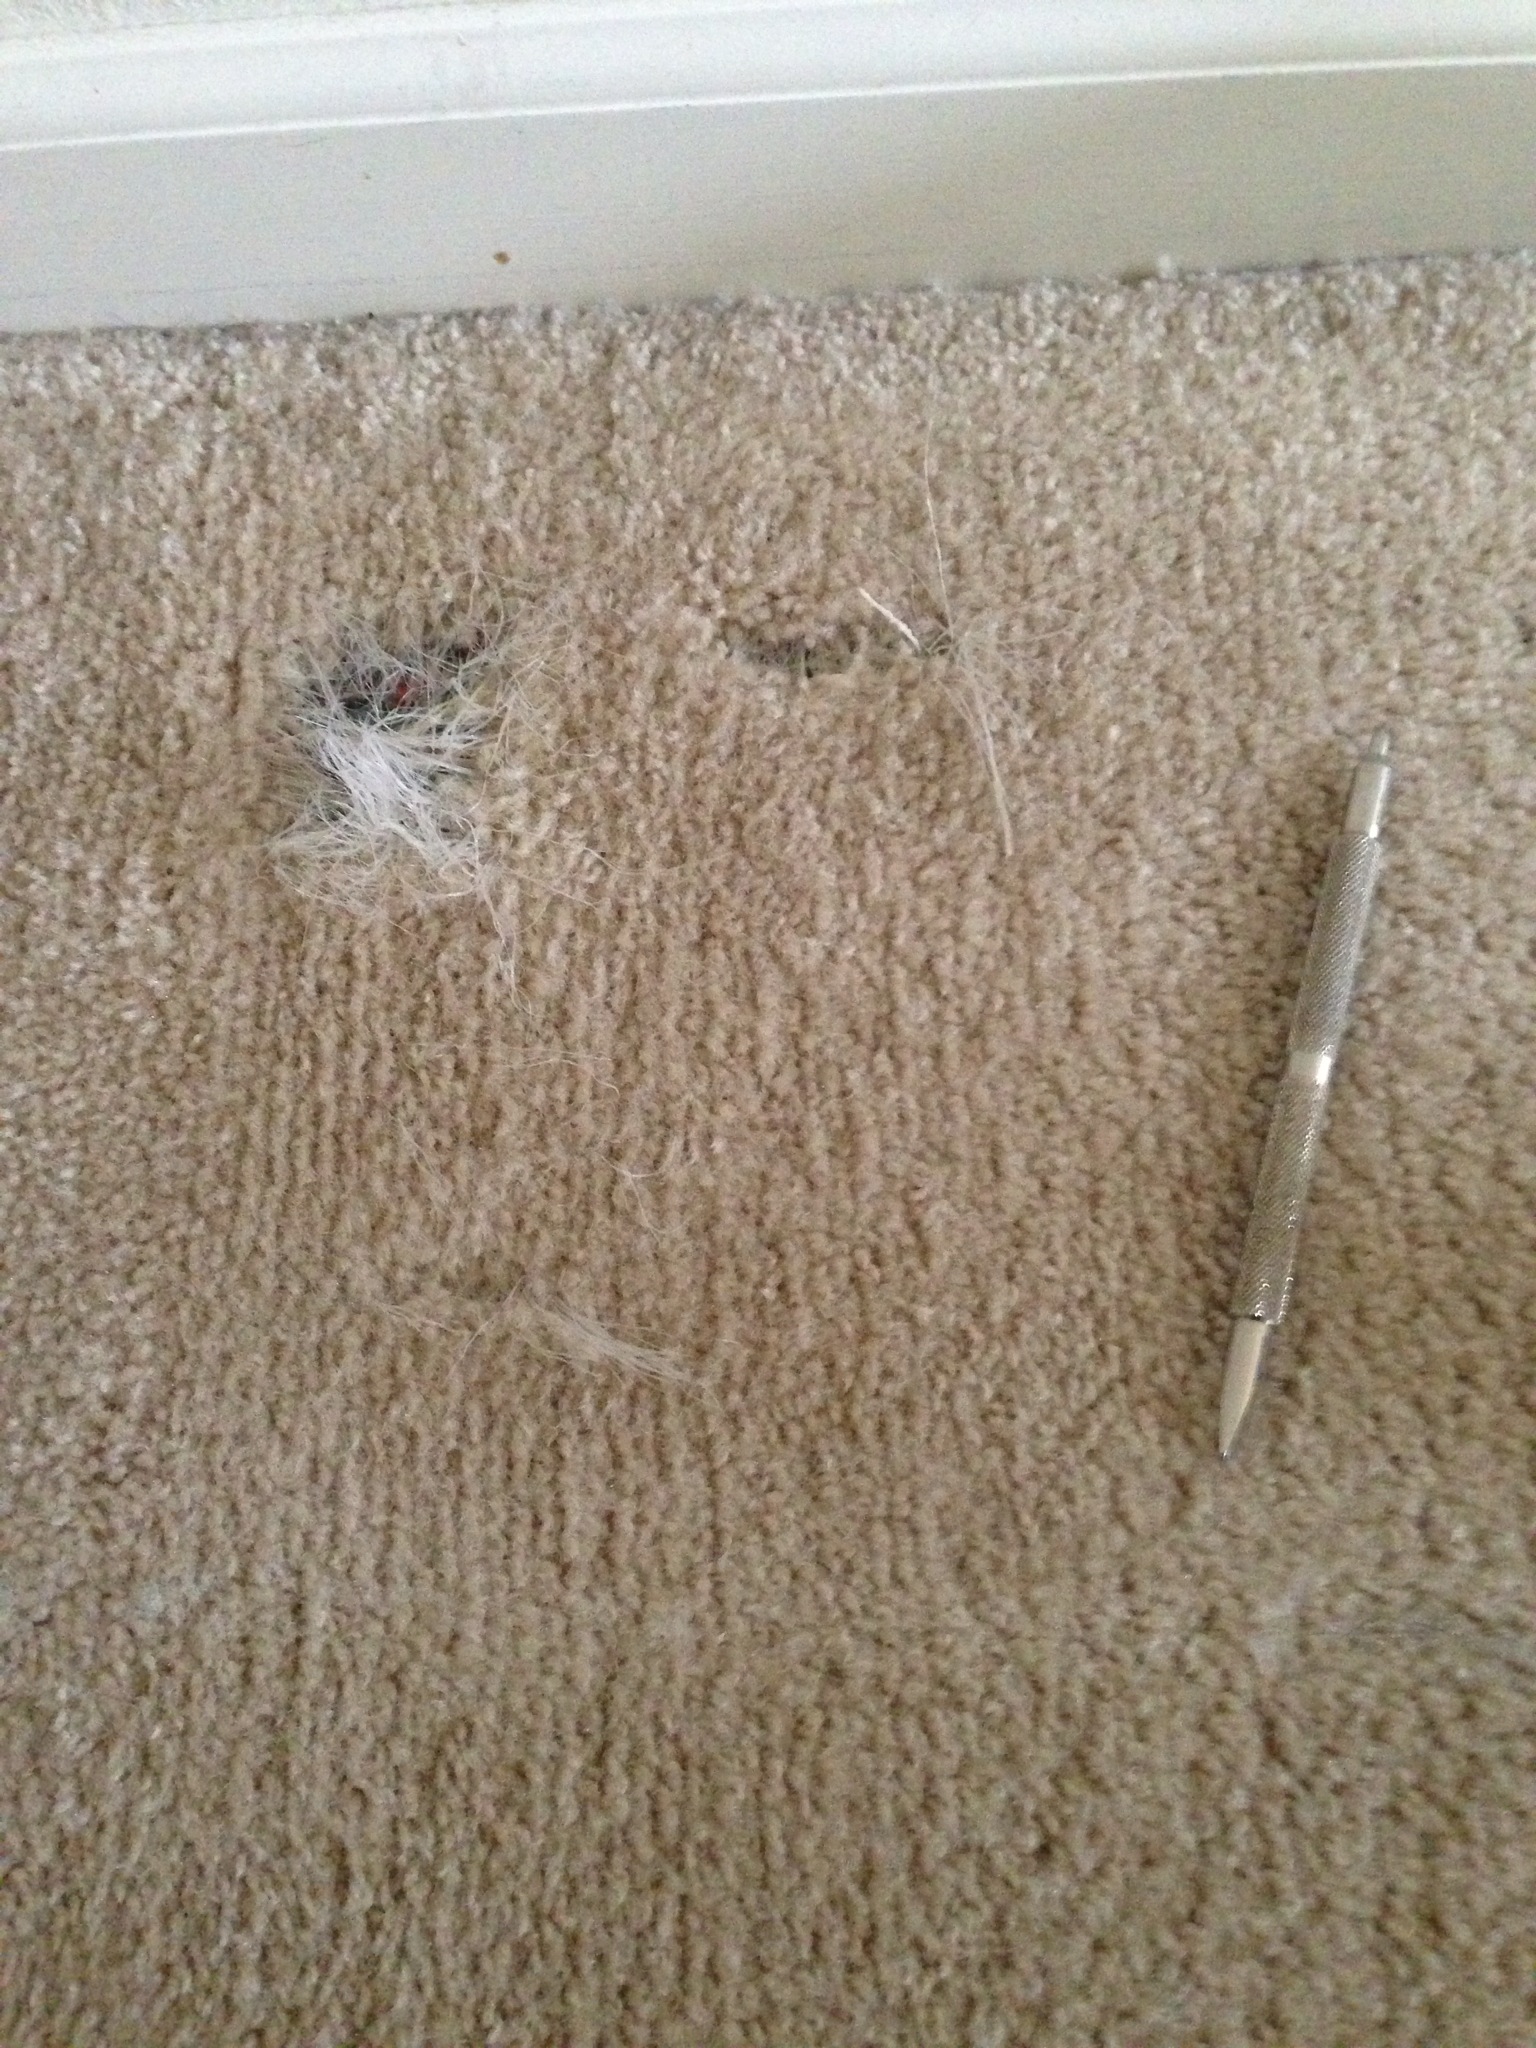 Pet Damage in Fishers, IN Carpet. Indianapolis Carpet Repair LOVES